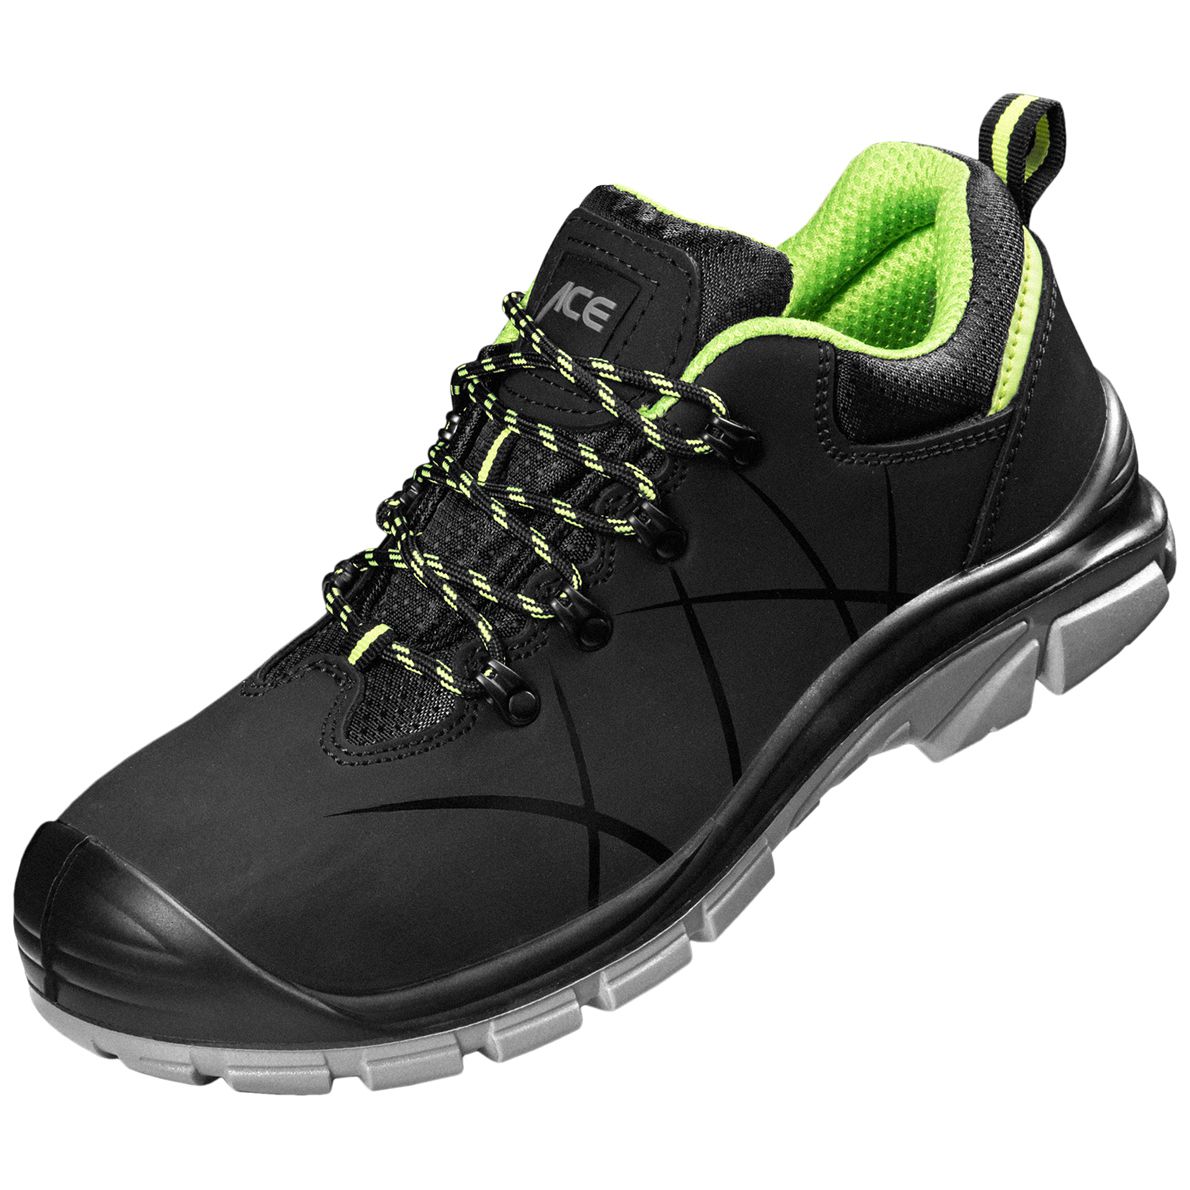 ACE Constructor S3-Arbeits-Sneakers - mit Stahlkappe - Sicherheits-Schuhe für die Arbeit  - Schwarz/Grün - 38